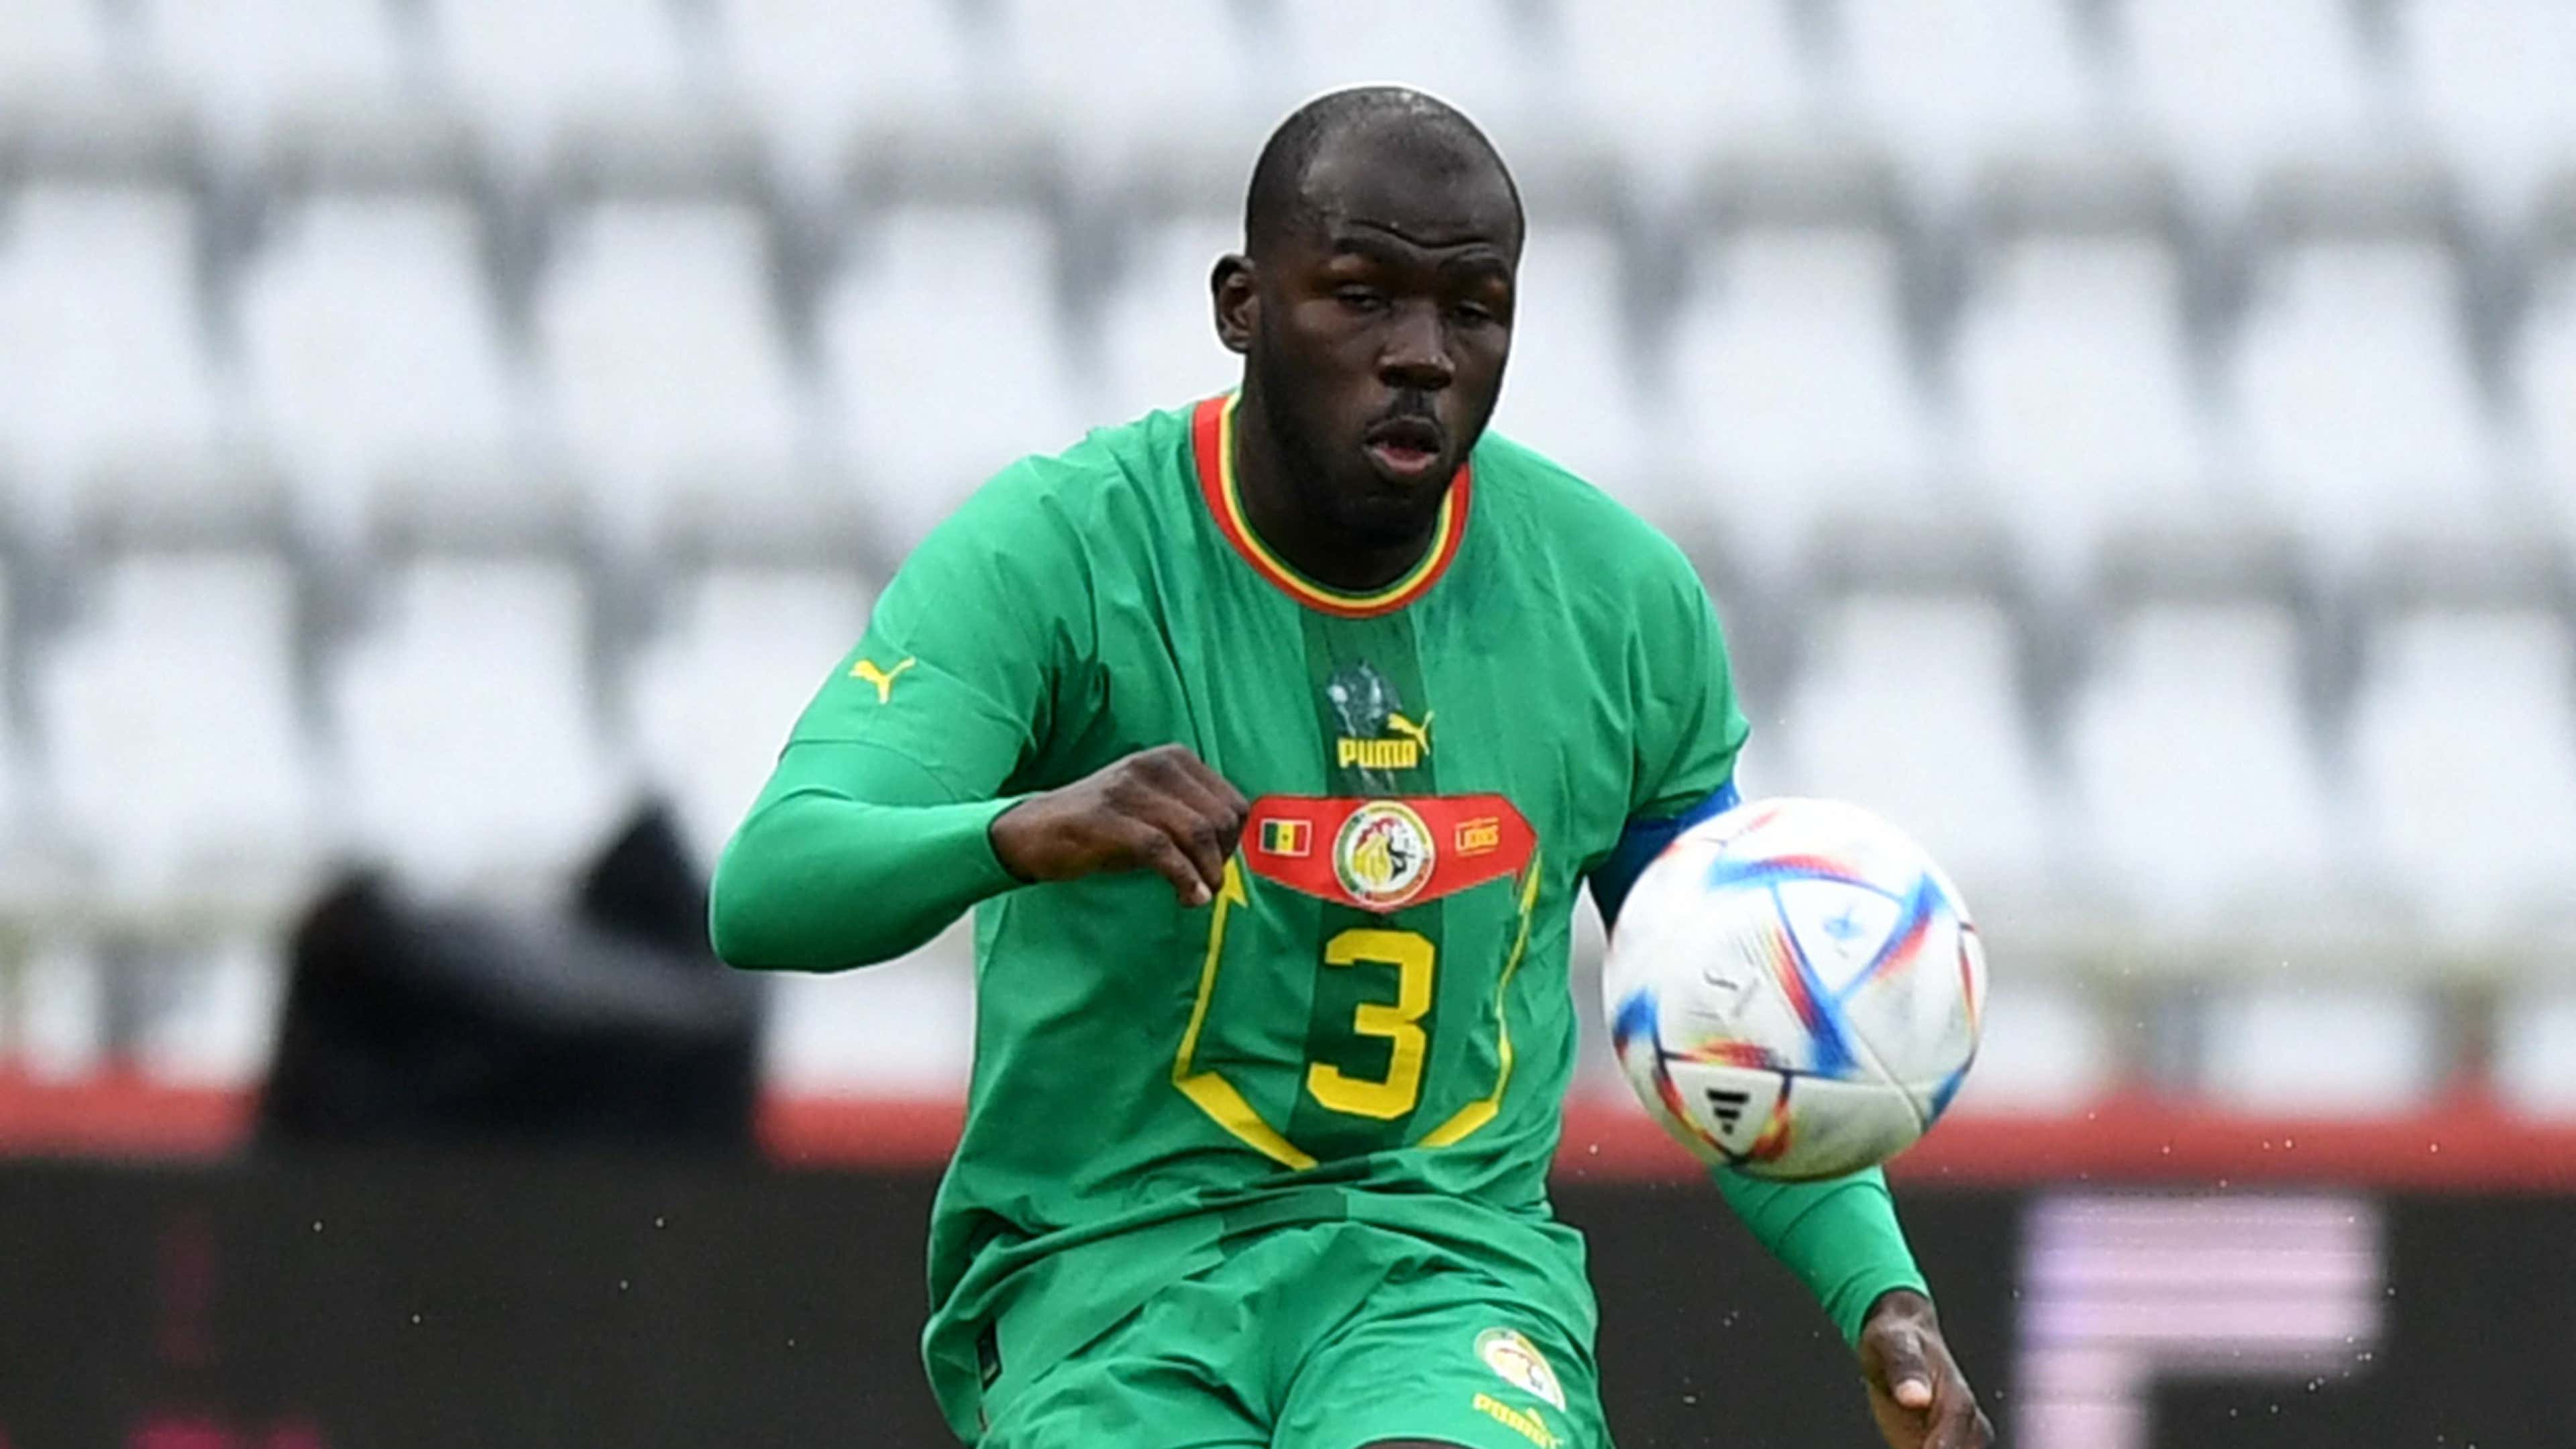 COPA 2018: Quais são os atletas convocados por Senegal para o